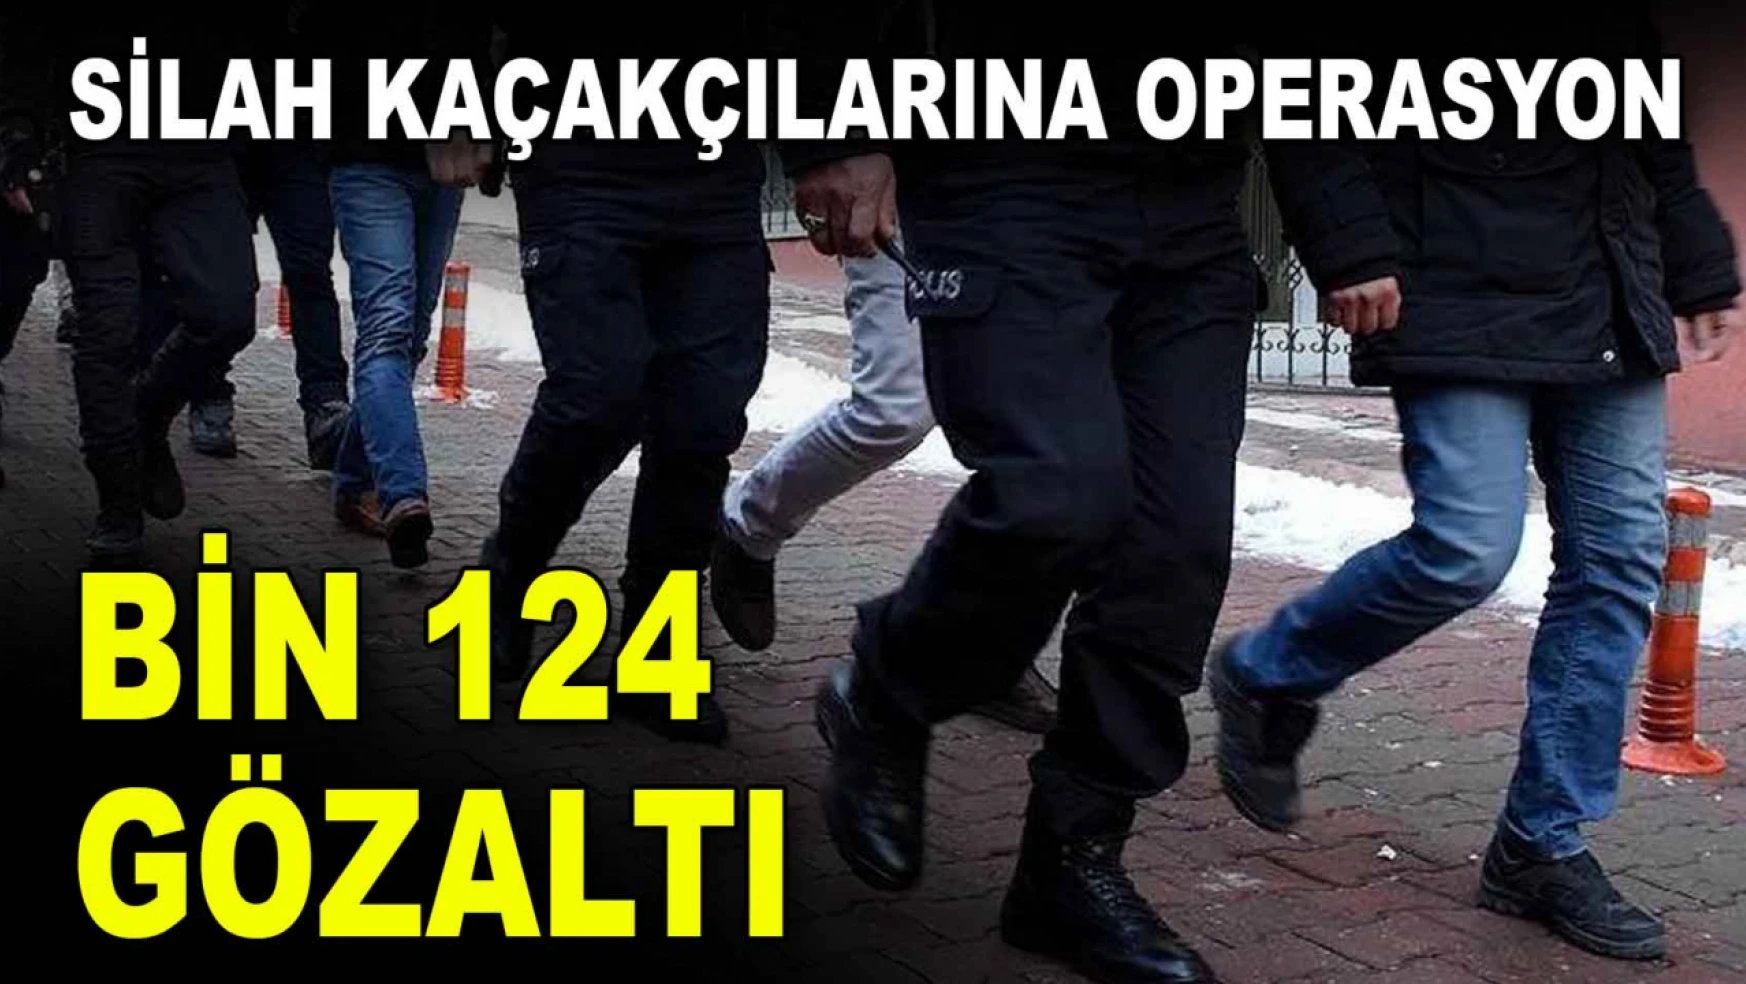 Silah Kaçakçılarına Operasyon! Bin 124 Gözaltı